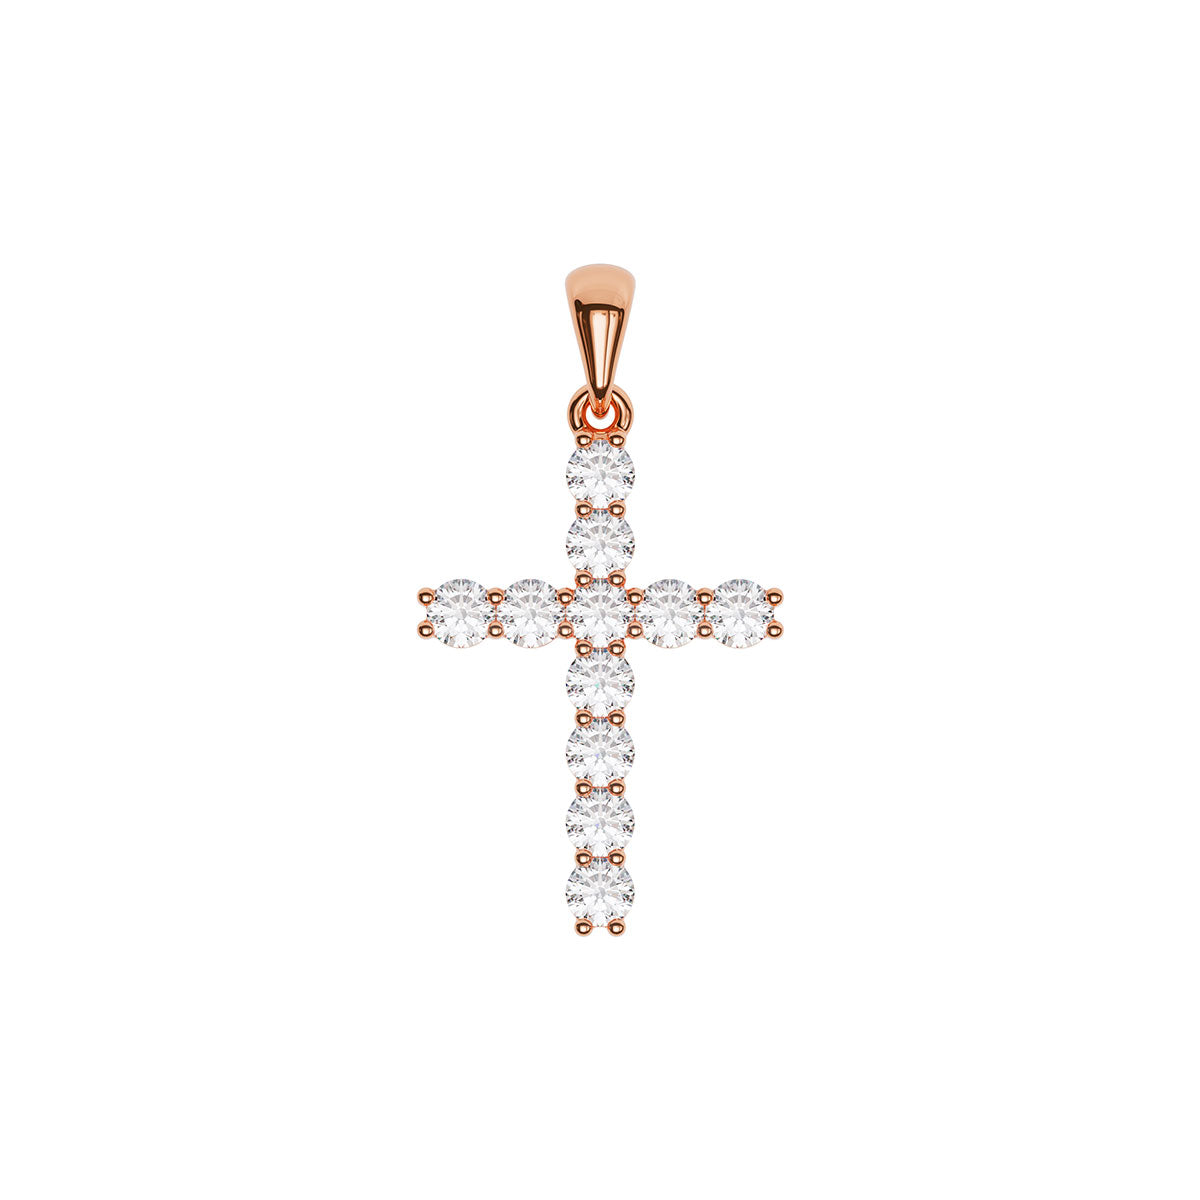 Standard Size Pavé Cross With 2.5mm Diamonds